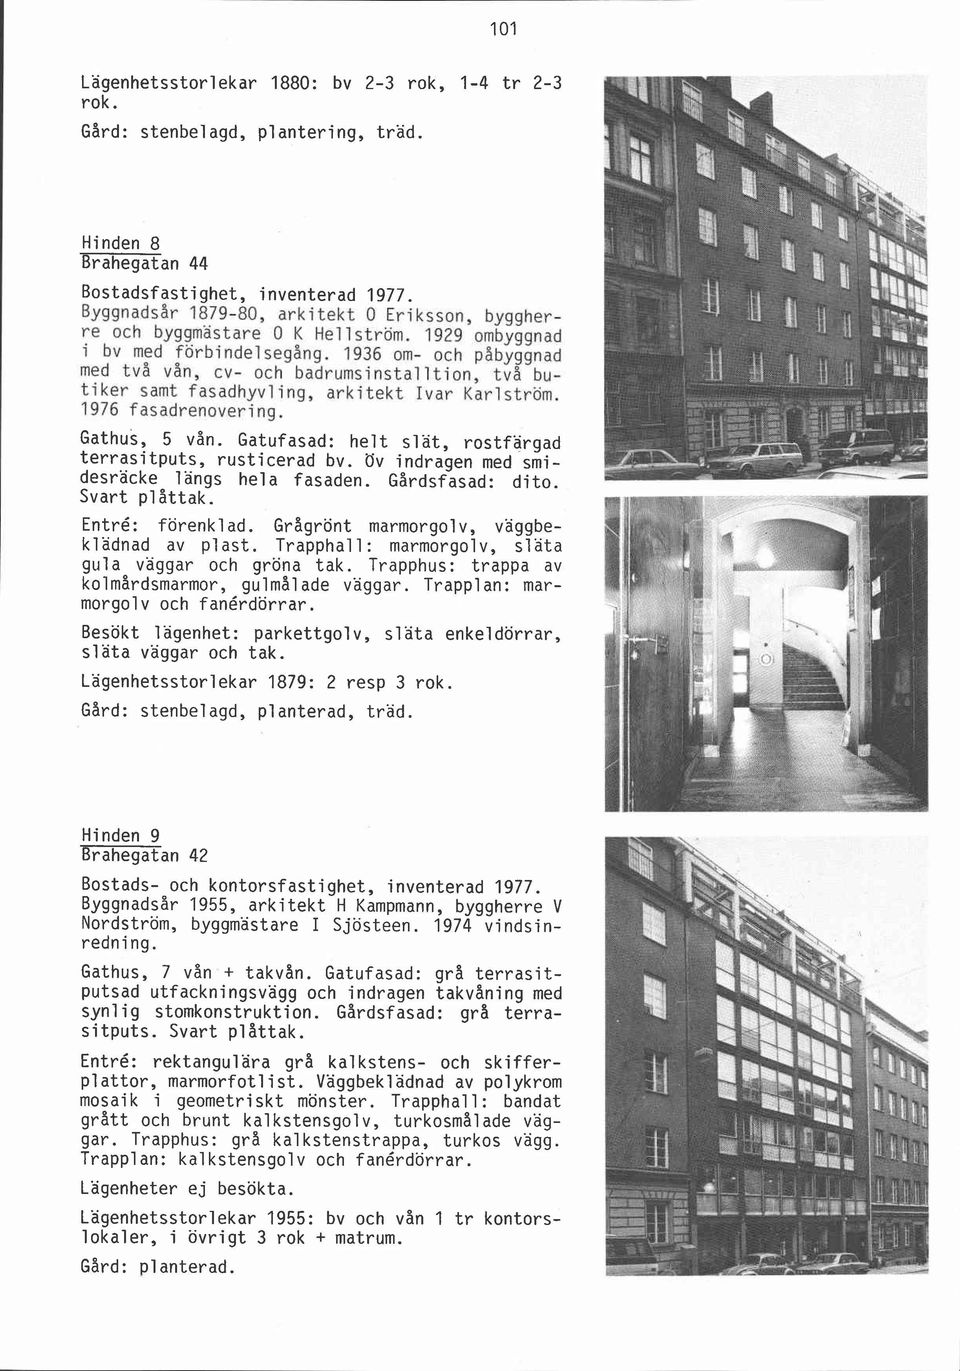 1936 om- och pabyggnad med två vån, cv- och badrumsinstalltion, tv8 butiker samt fasadhyvling, arkitekt Ivar Karlström. 1976 fasadrenovering, Gathus, 5 vån.